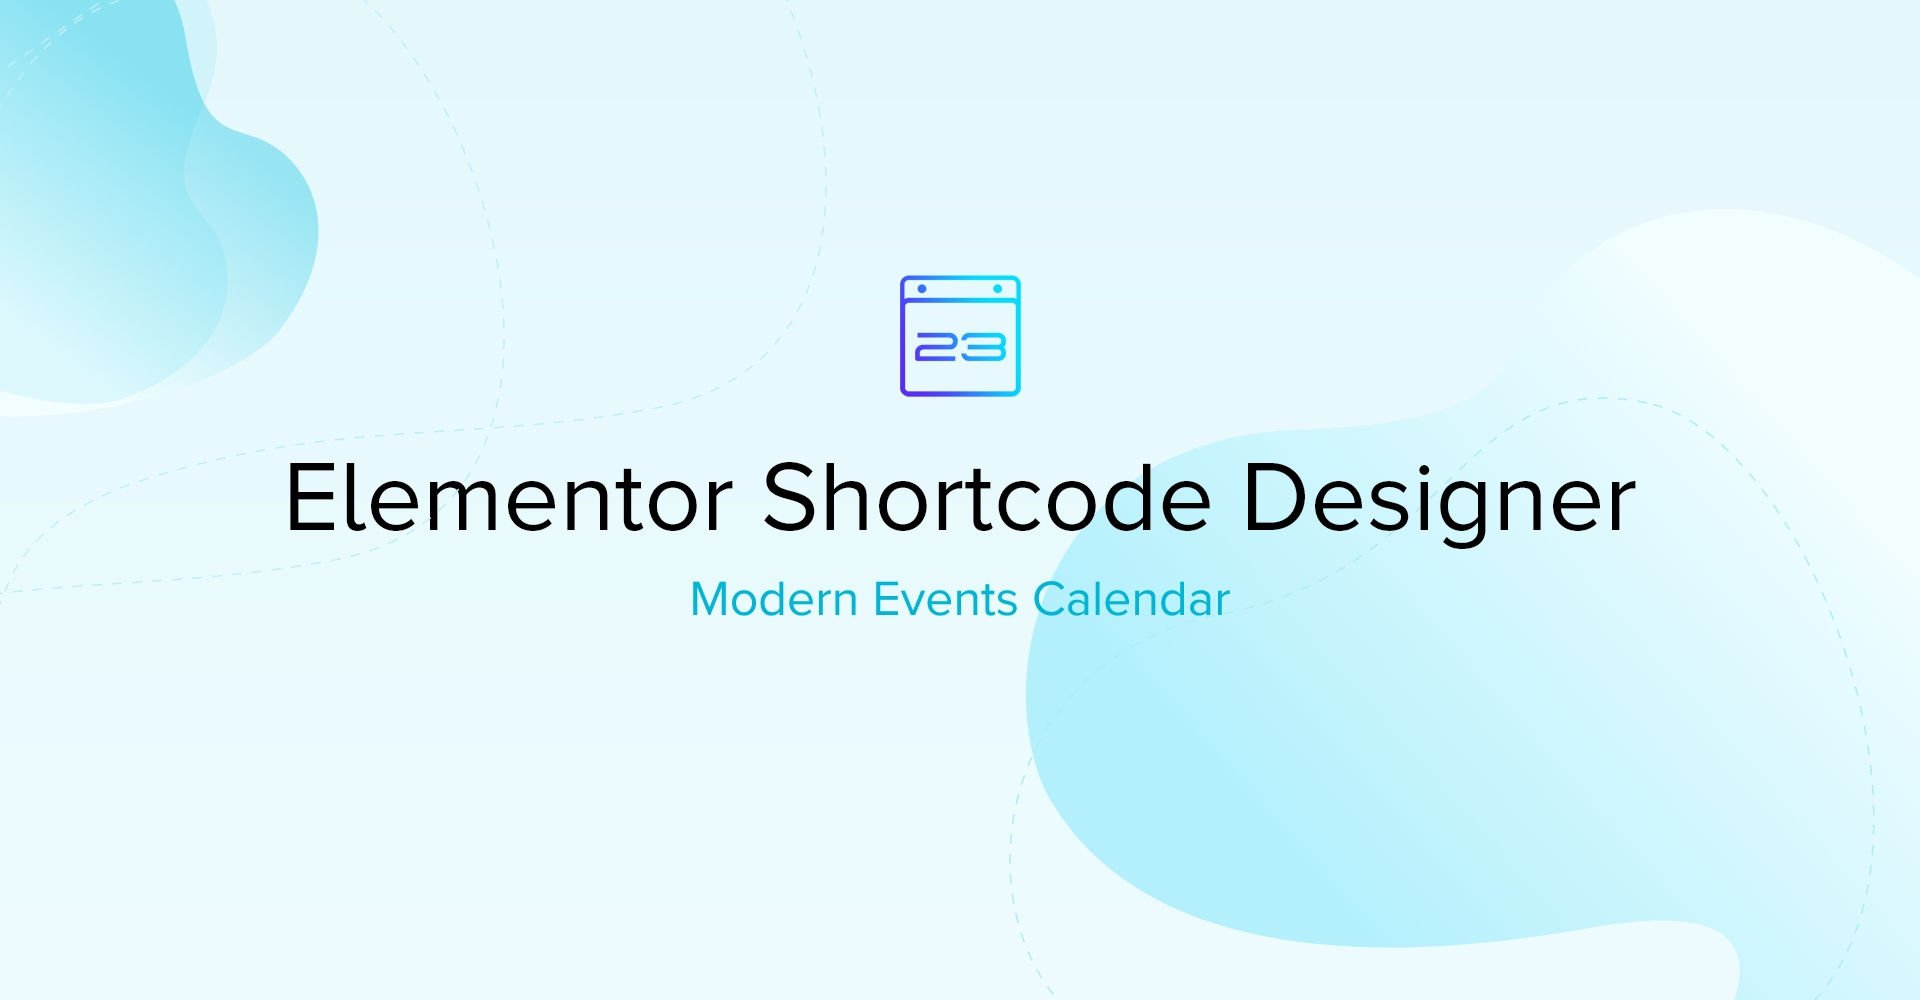 Elementor Shortcode Designer for MEC.jpg